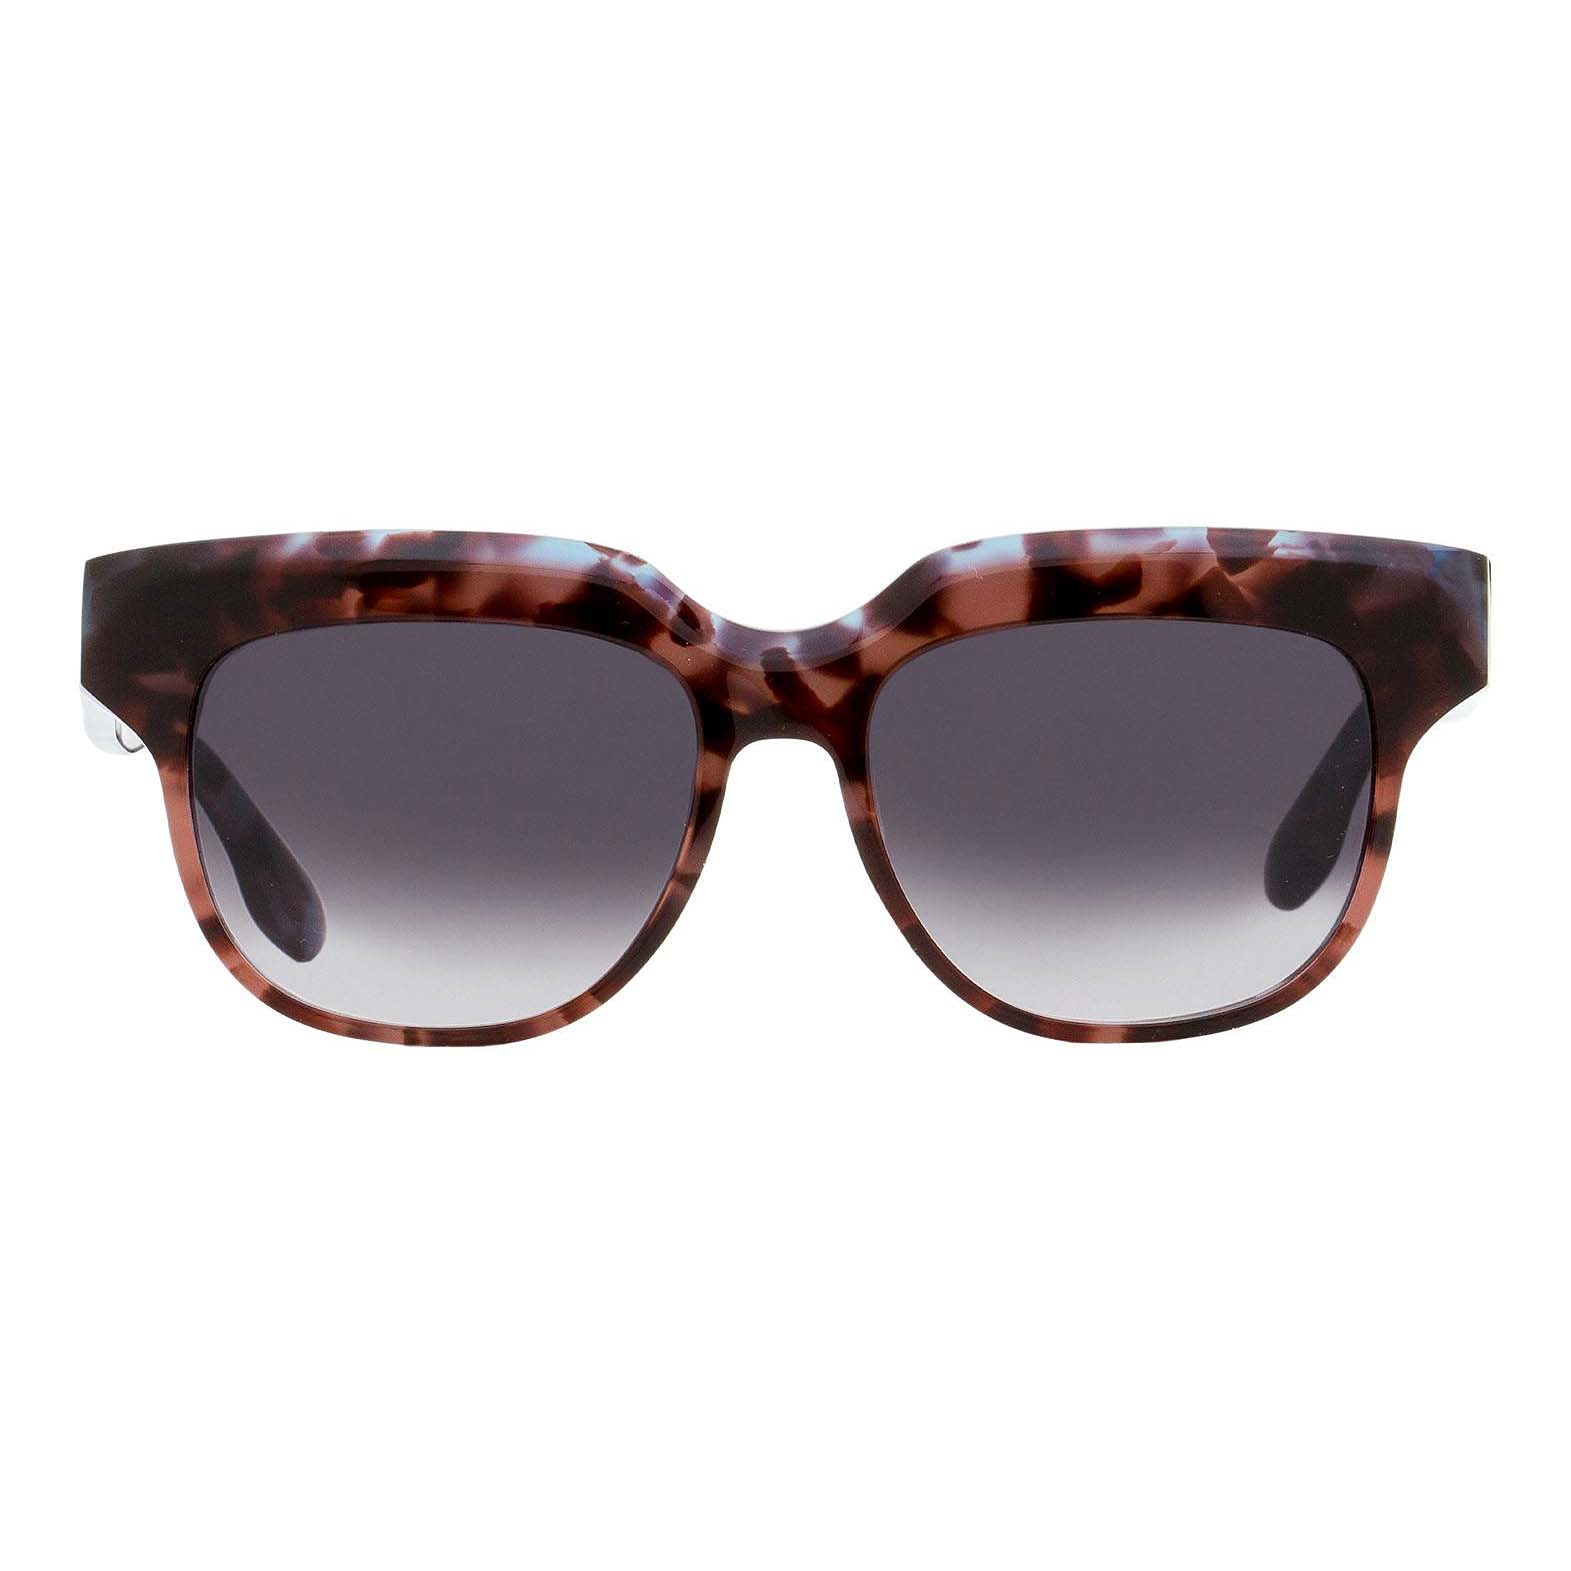 Солнцезащитные очки Victoria Beckham Square VB604S, синий/коричневый фото